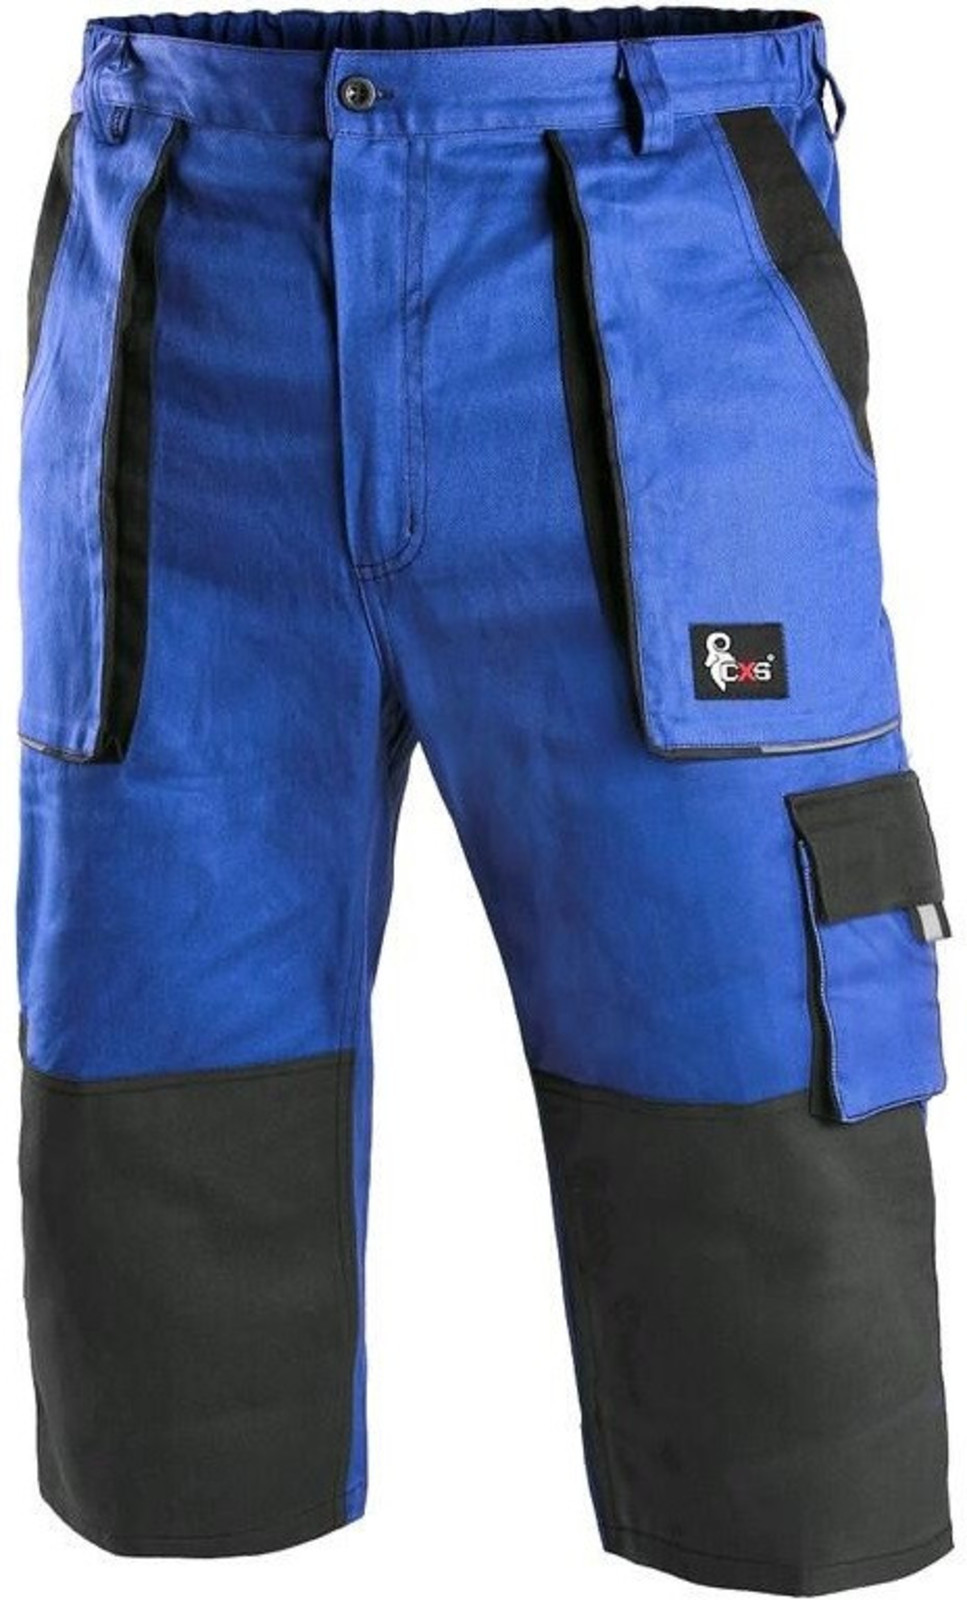 Pánske montérkové 3/4 nohavice CXS Luxy Patrik - veľkosť: 56, farba: modrá/čierna